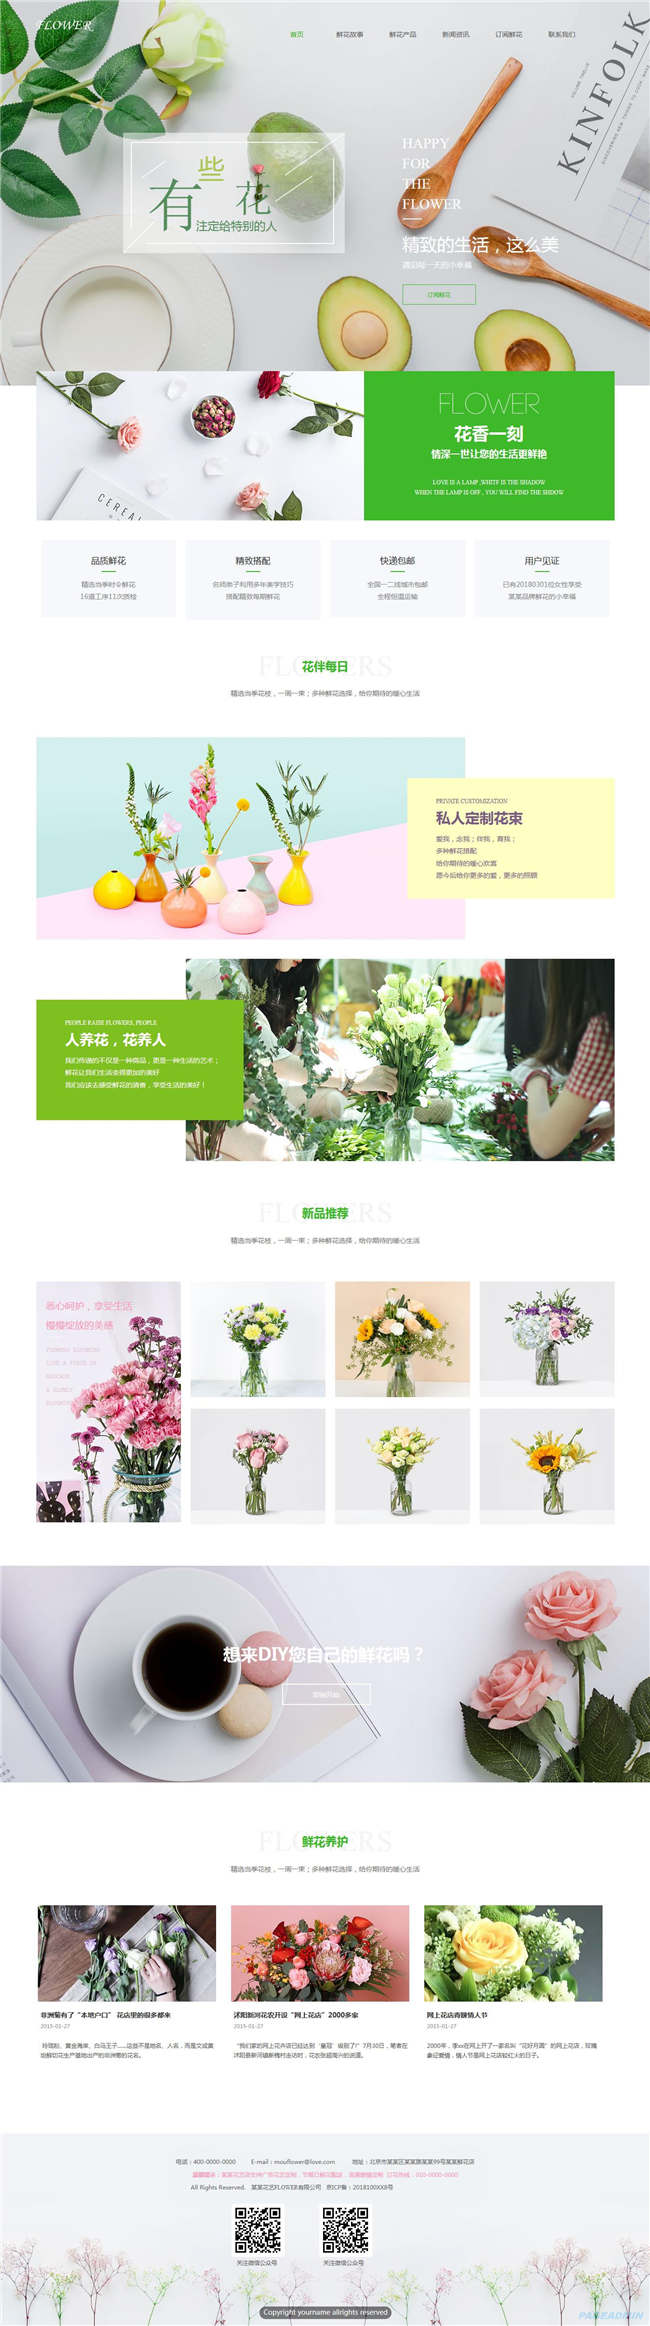 鲜花店农业畜牧养殖种植花卉鲜花响应式网站WordPress模板演示图